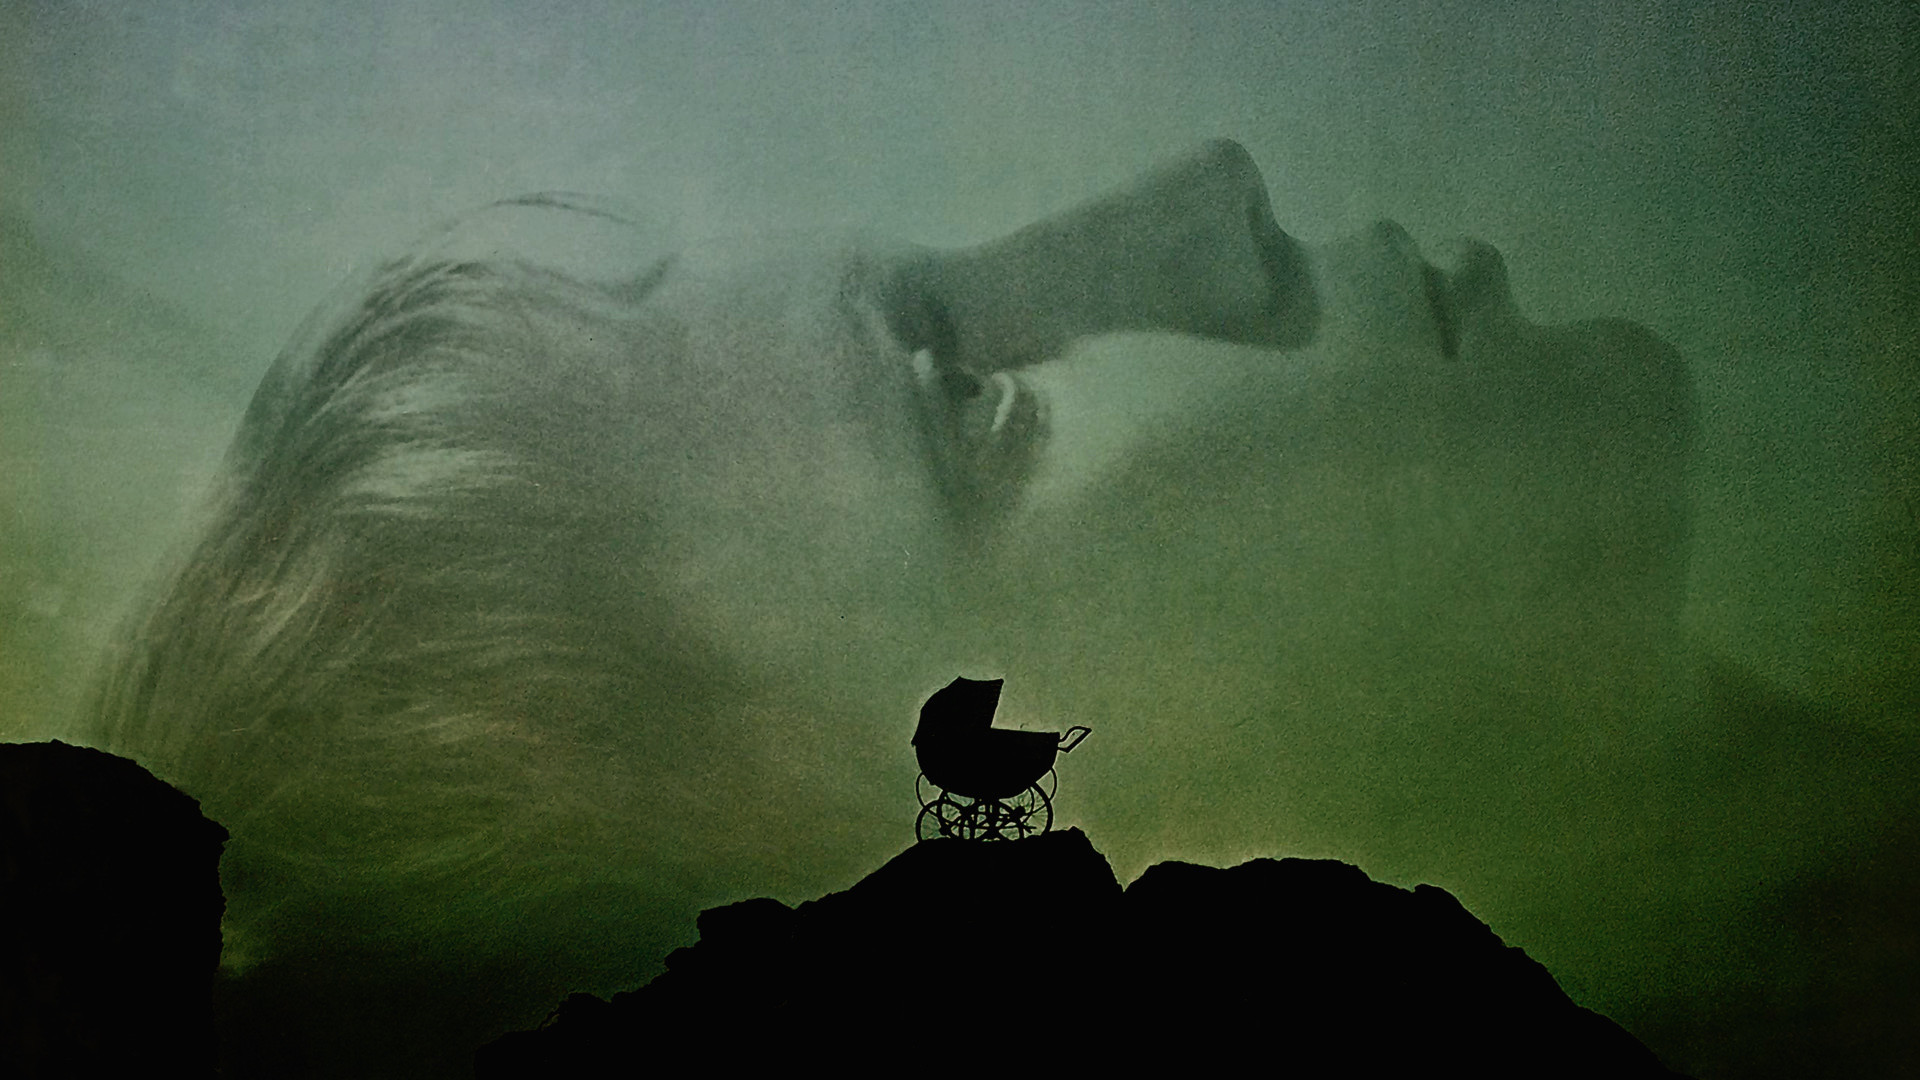 【幕后花絮383】《罗斯玛丽的婴儿》中字花絮合集 罗曼·波兰斯基 1968年